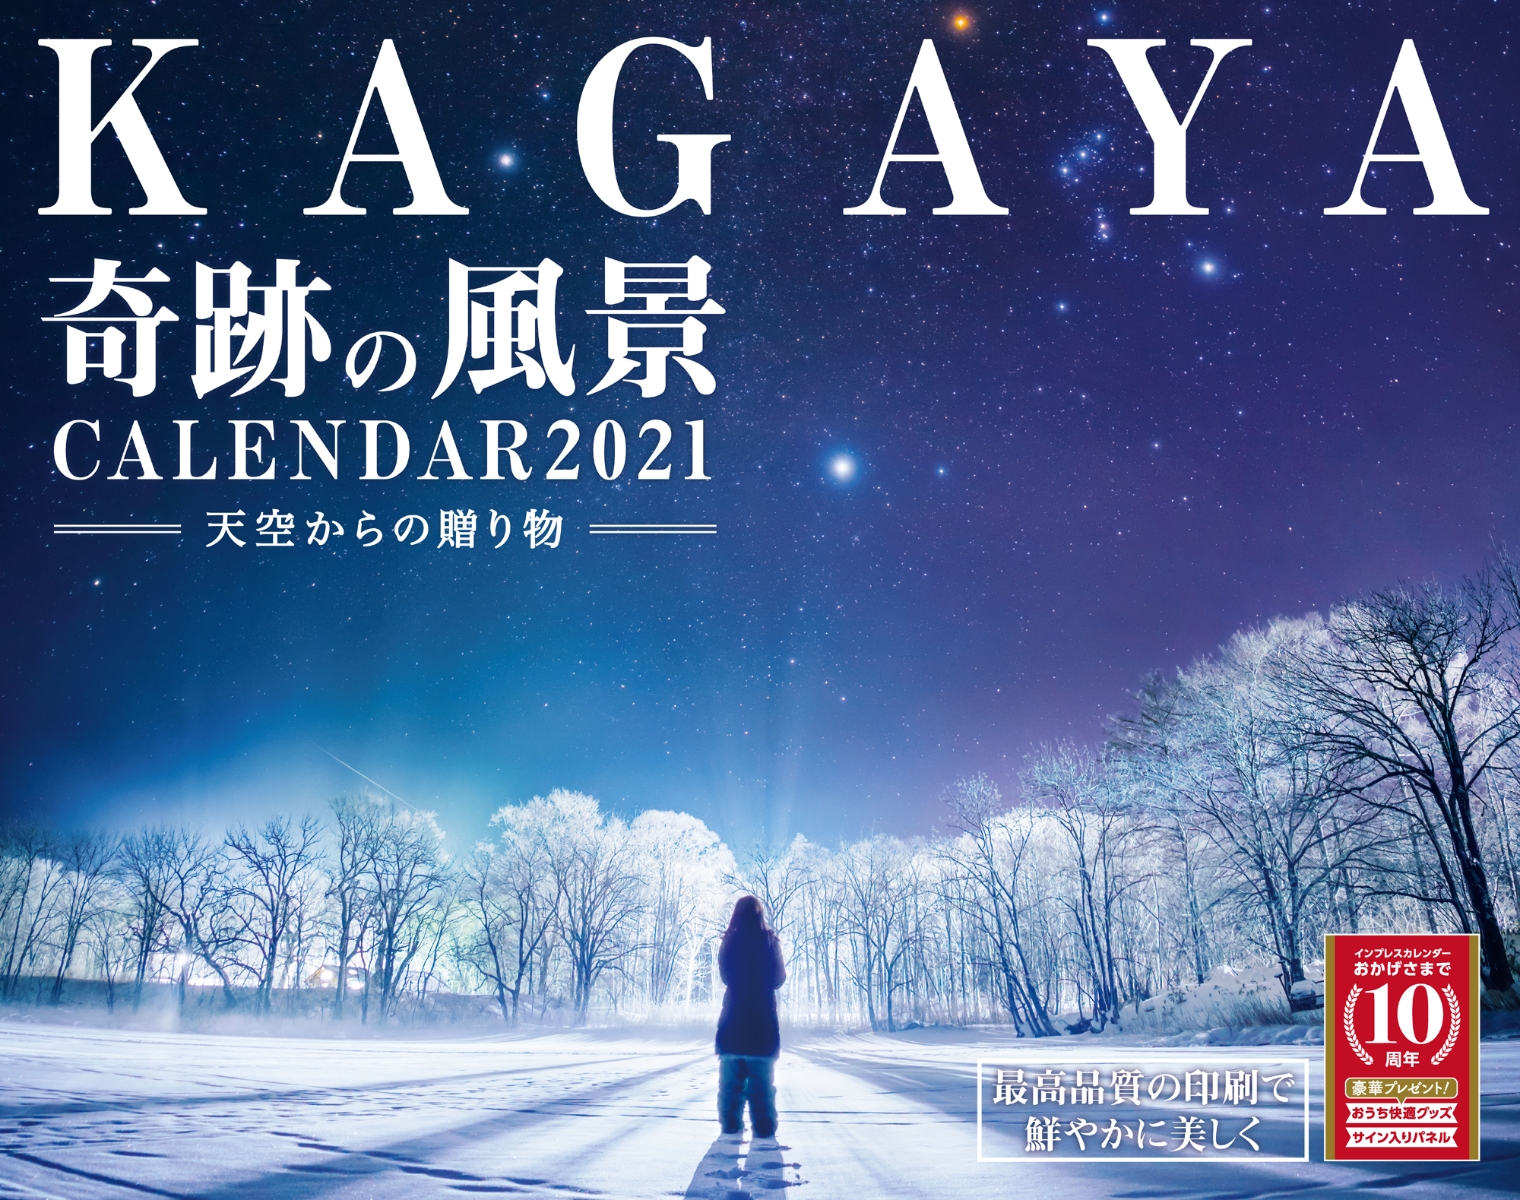 楽天ブックス 楽天ブックス限定特典付 Kagaya奇跡の風景calendar 21 天空からの贈り物 本